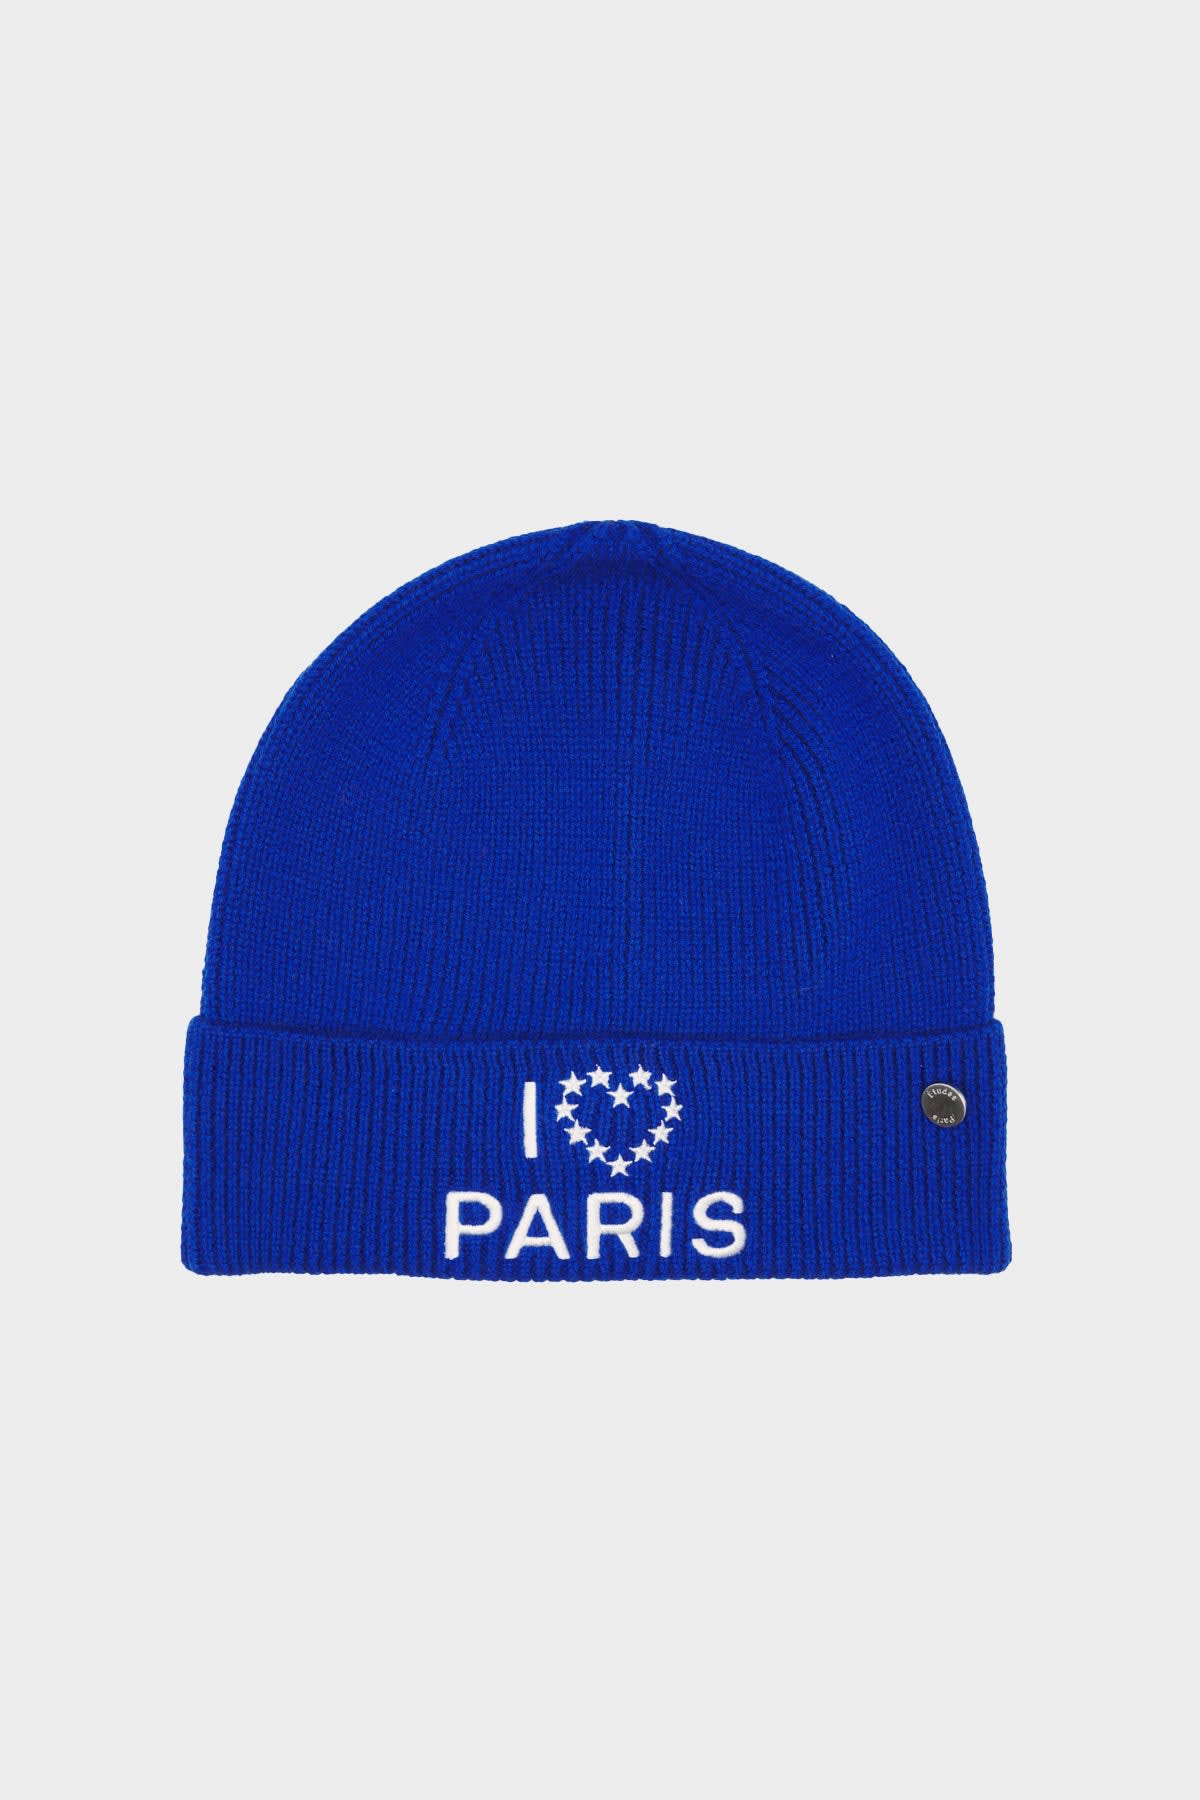 ÉTUDES BEANIE I LOVE PARIS BLUE HATS 1